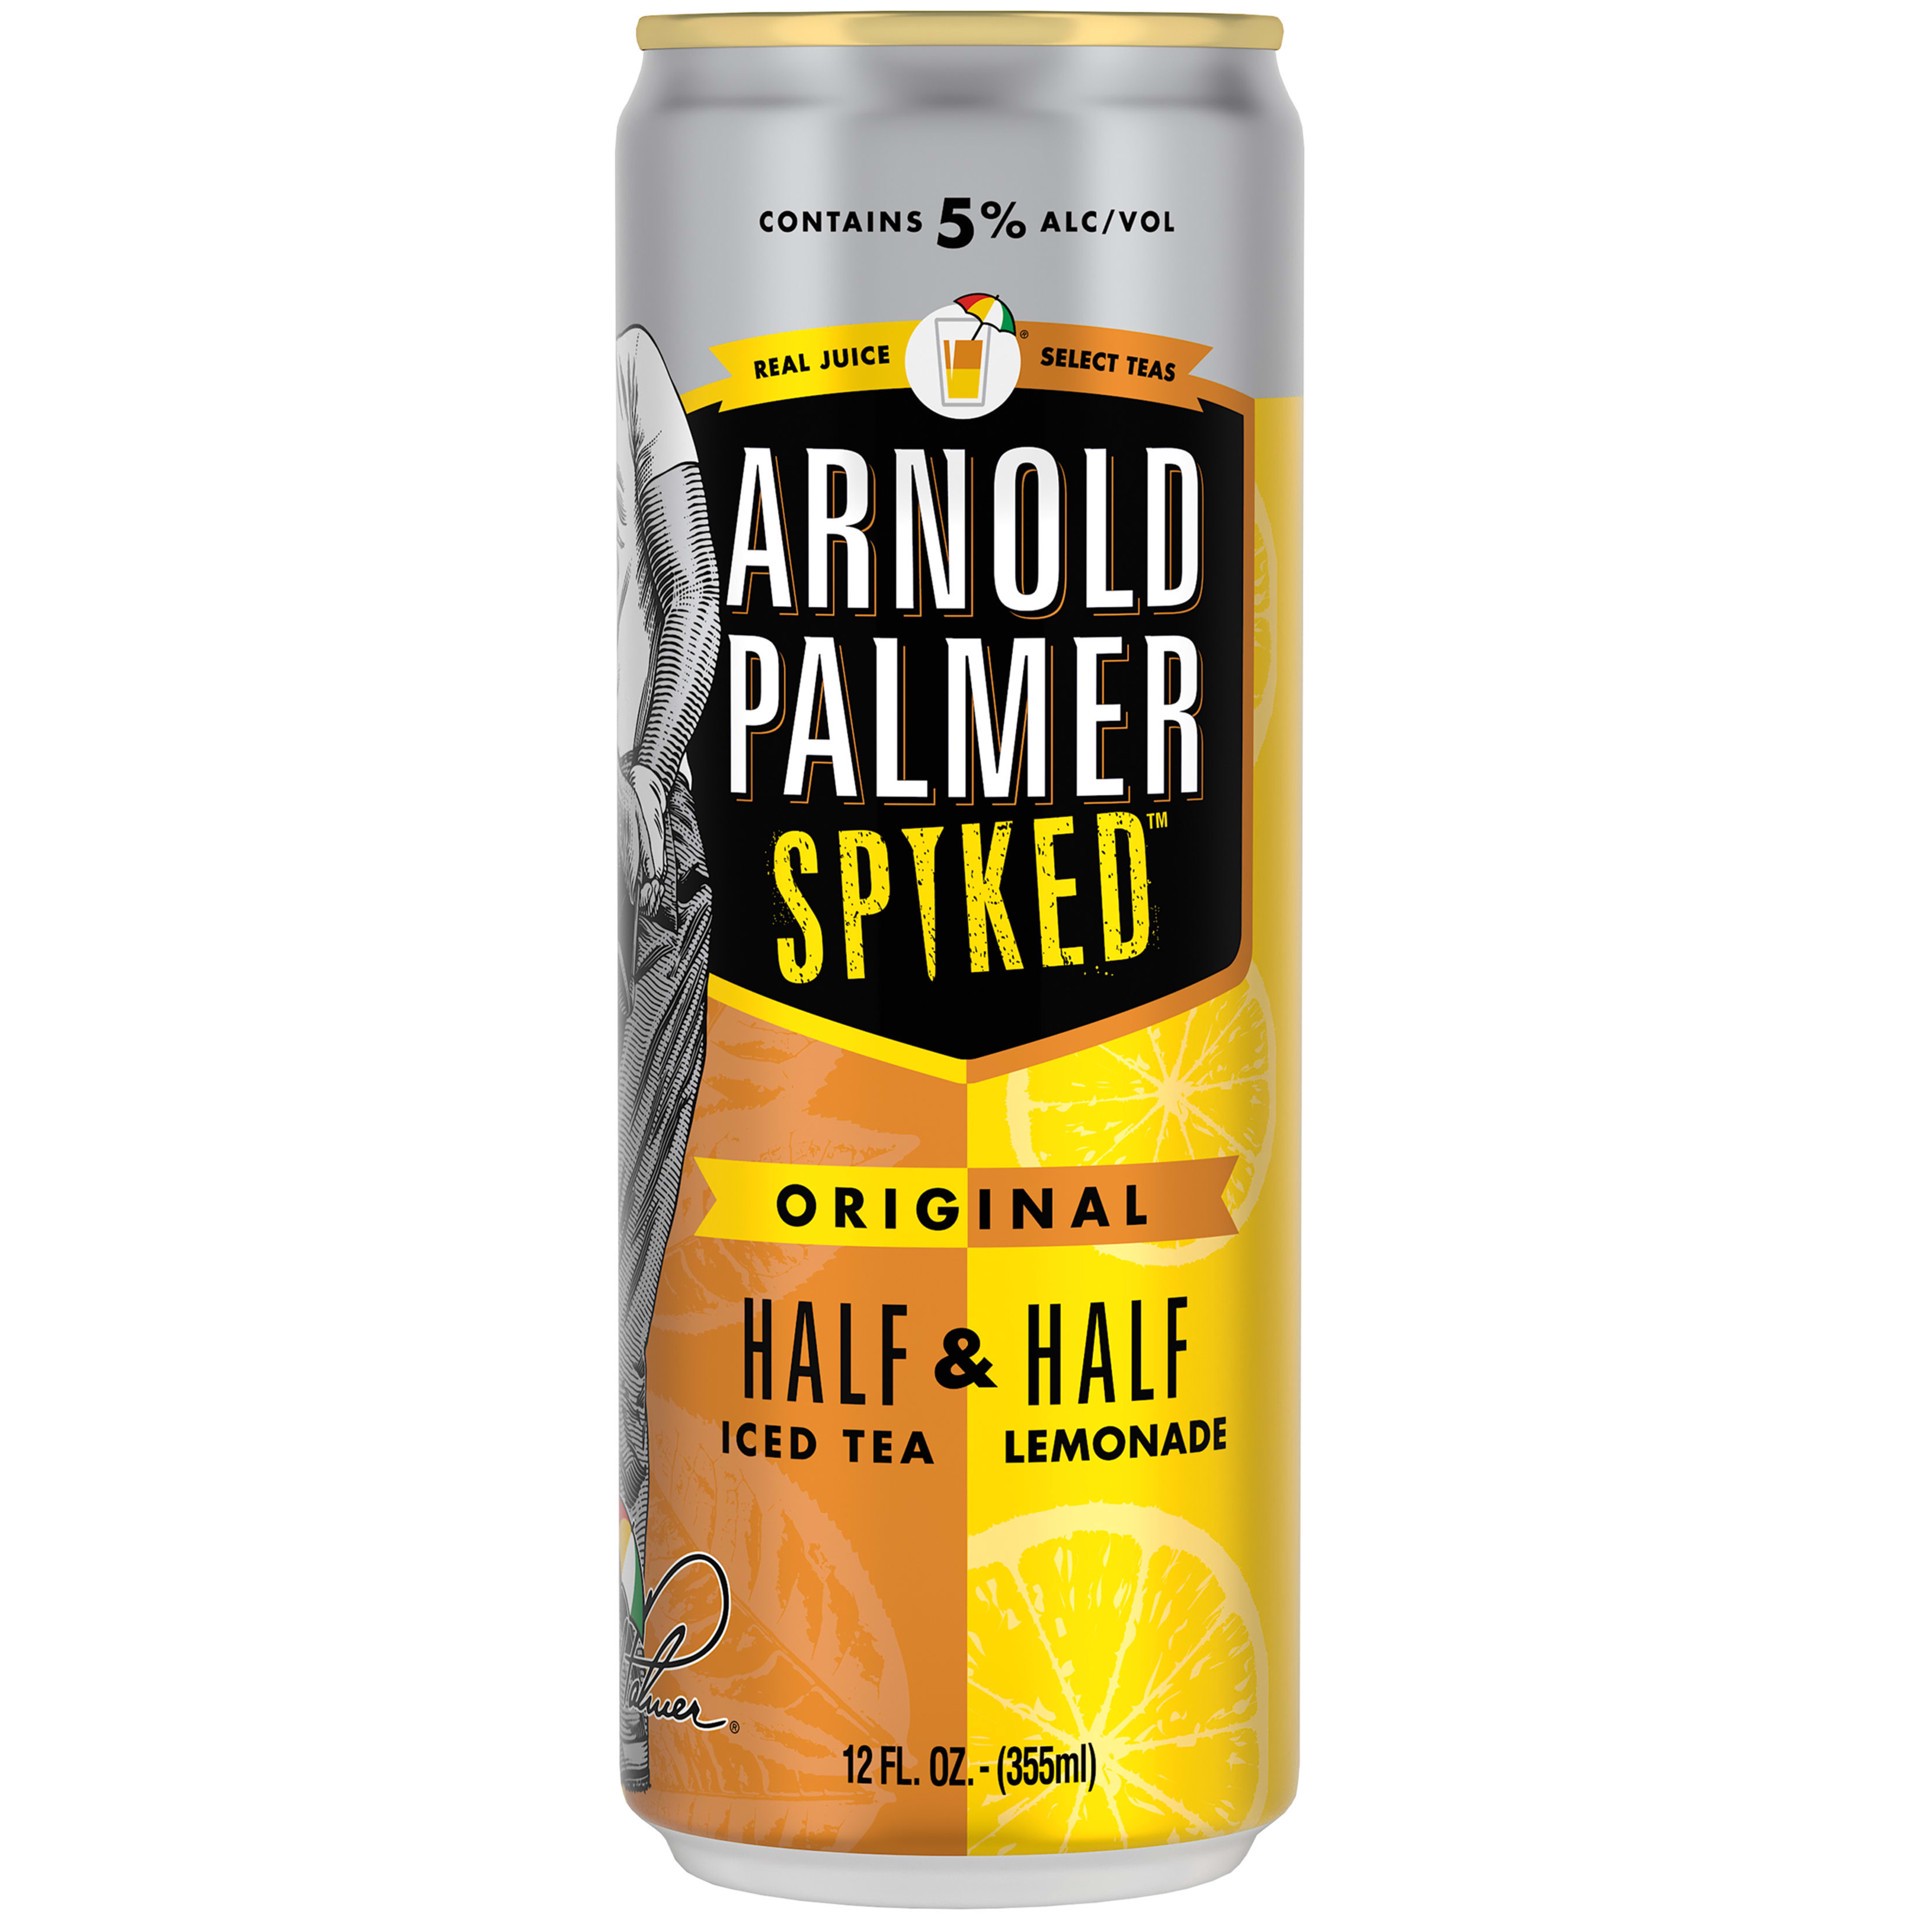 slide 2 of 5, Arnold Palmer Spiked Half & Half Original Arnold Palmer Spiked Original Half & Half Iced Tea Lemonade, 12 Pack, 12 fl oz Cans, 5% ABV, 12 fl oz